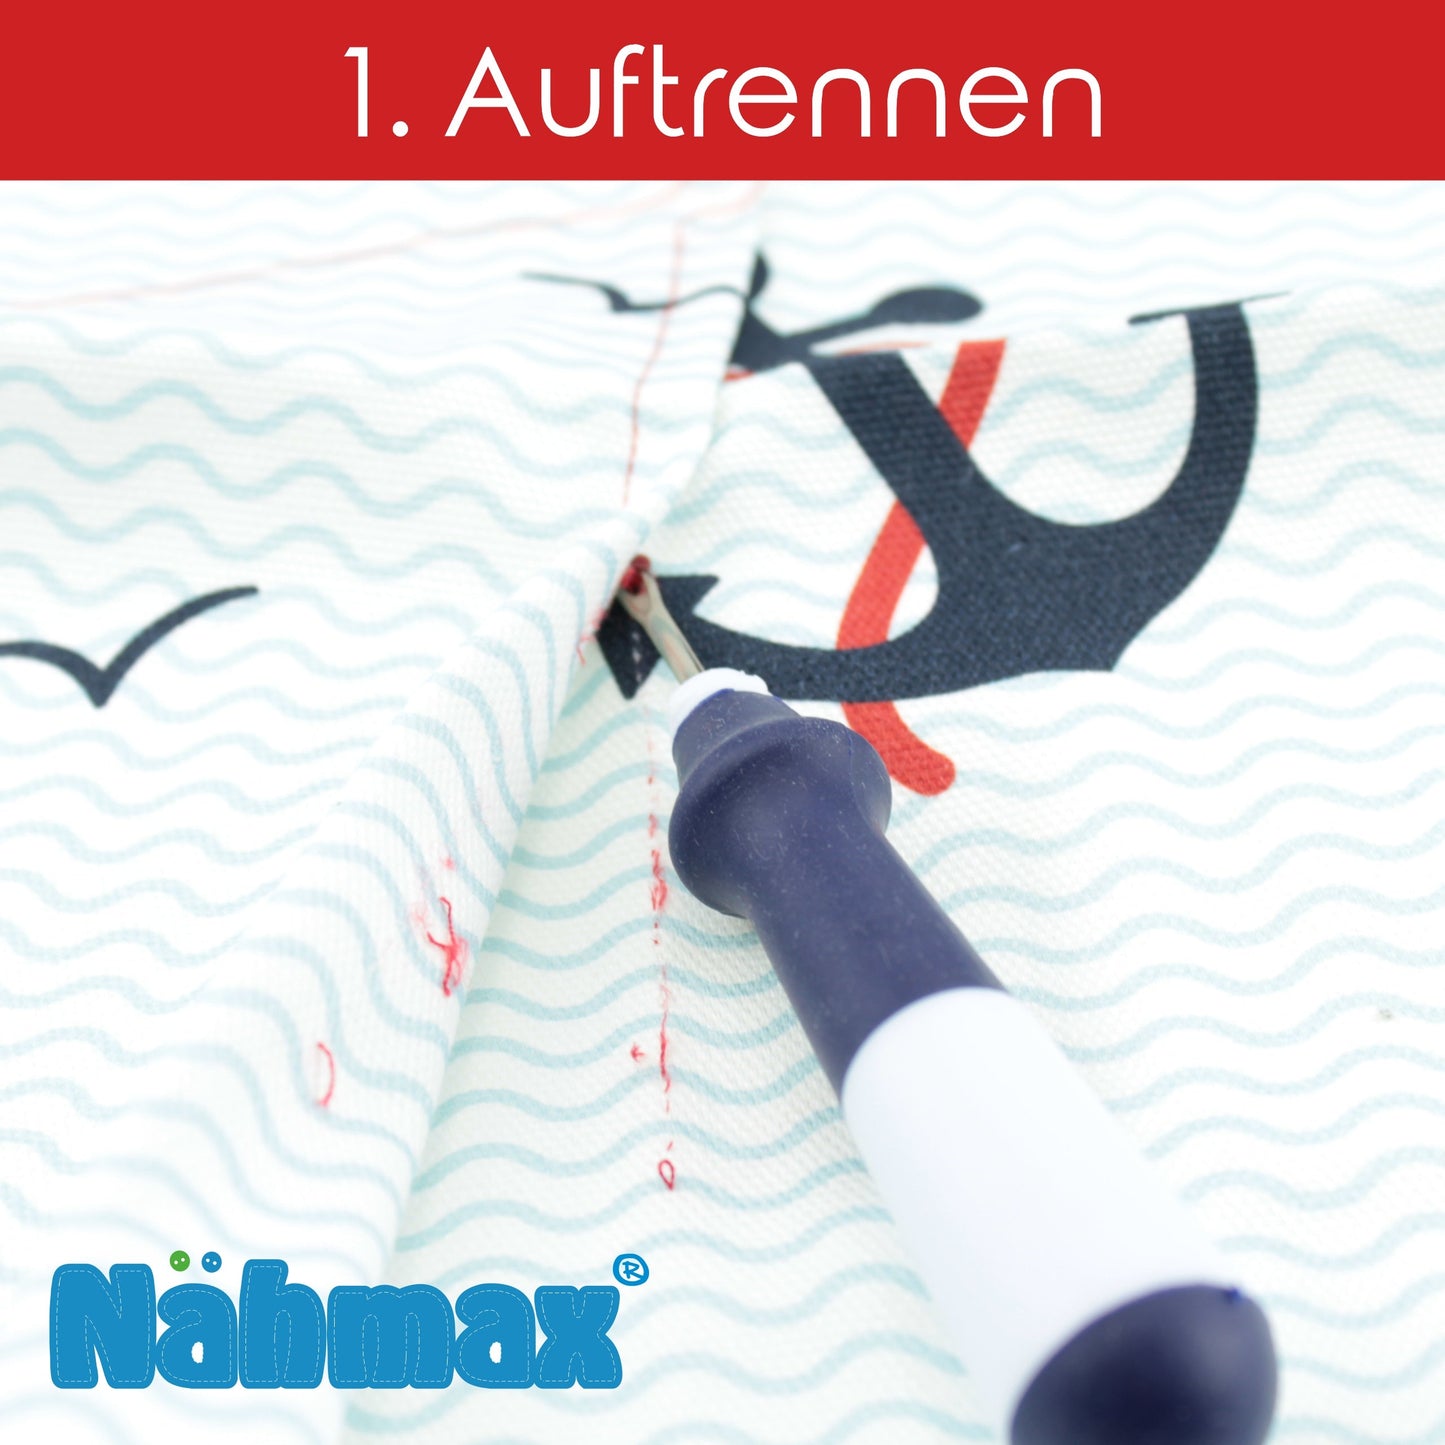 Nähmax Naht-Fix seam ripper blue with eraser function 314991